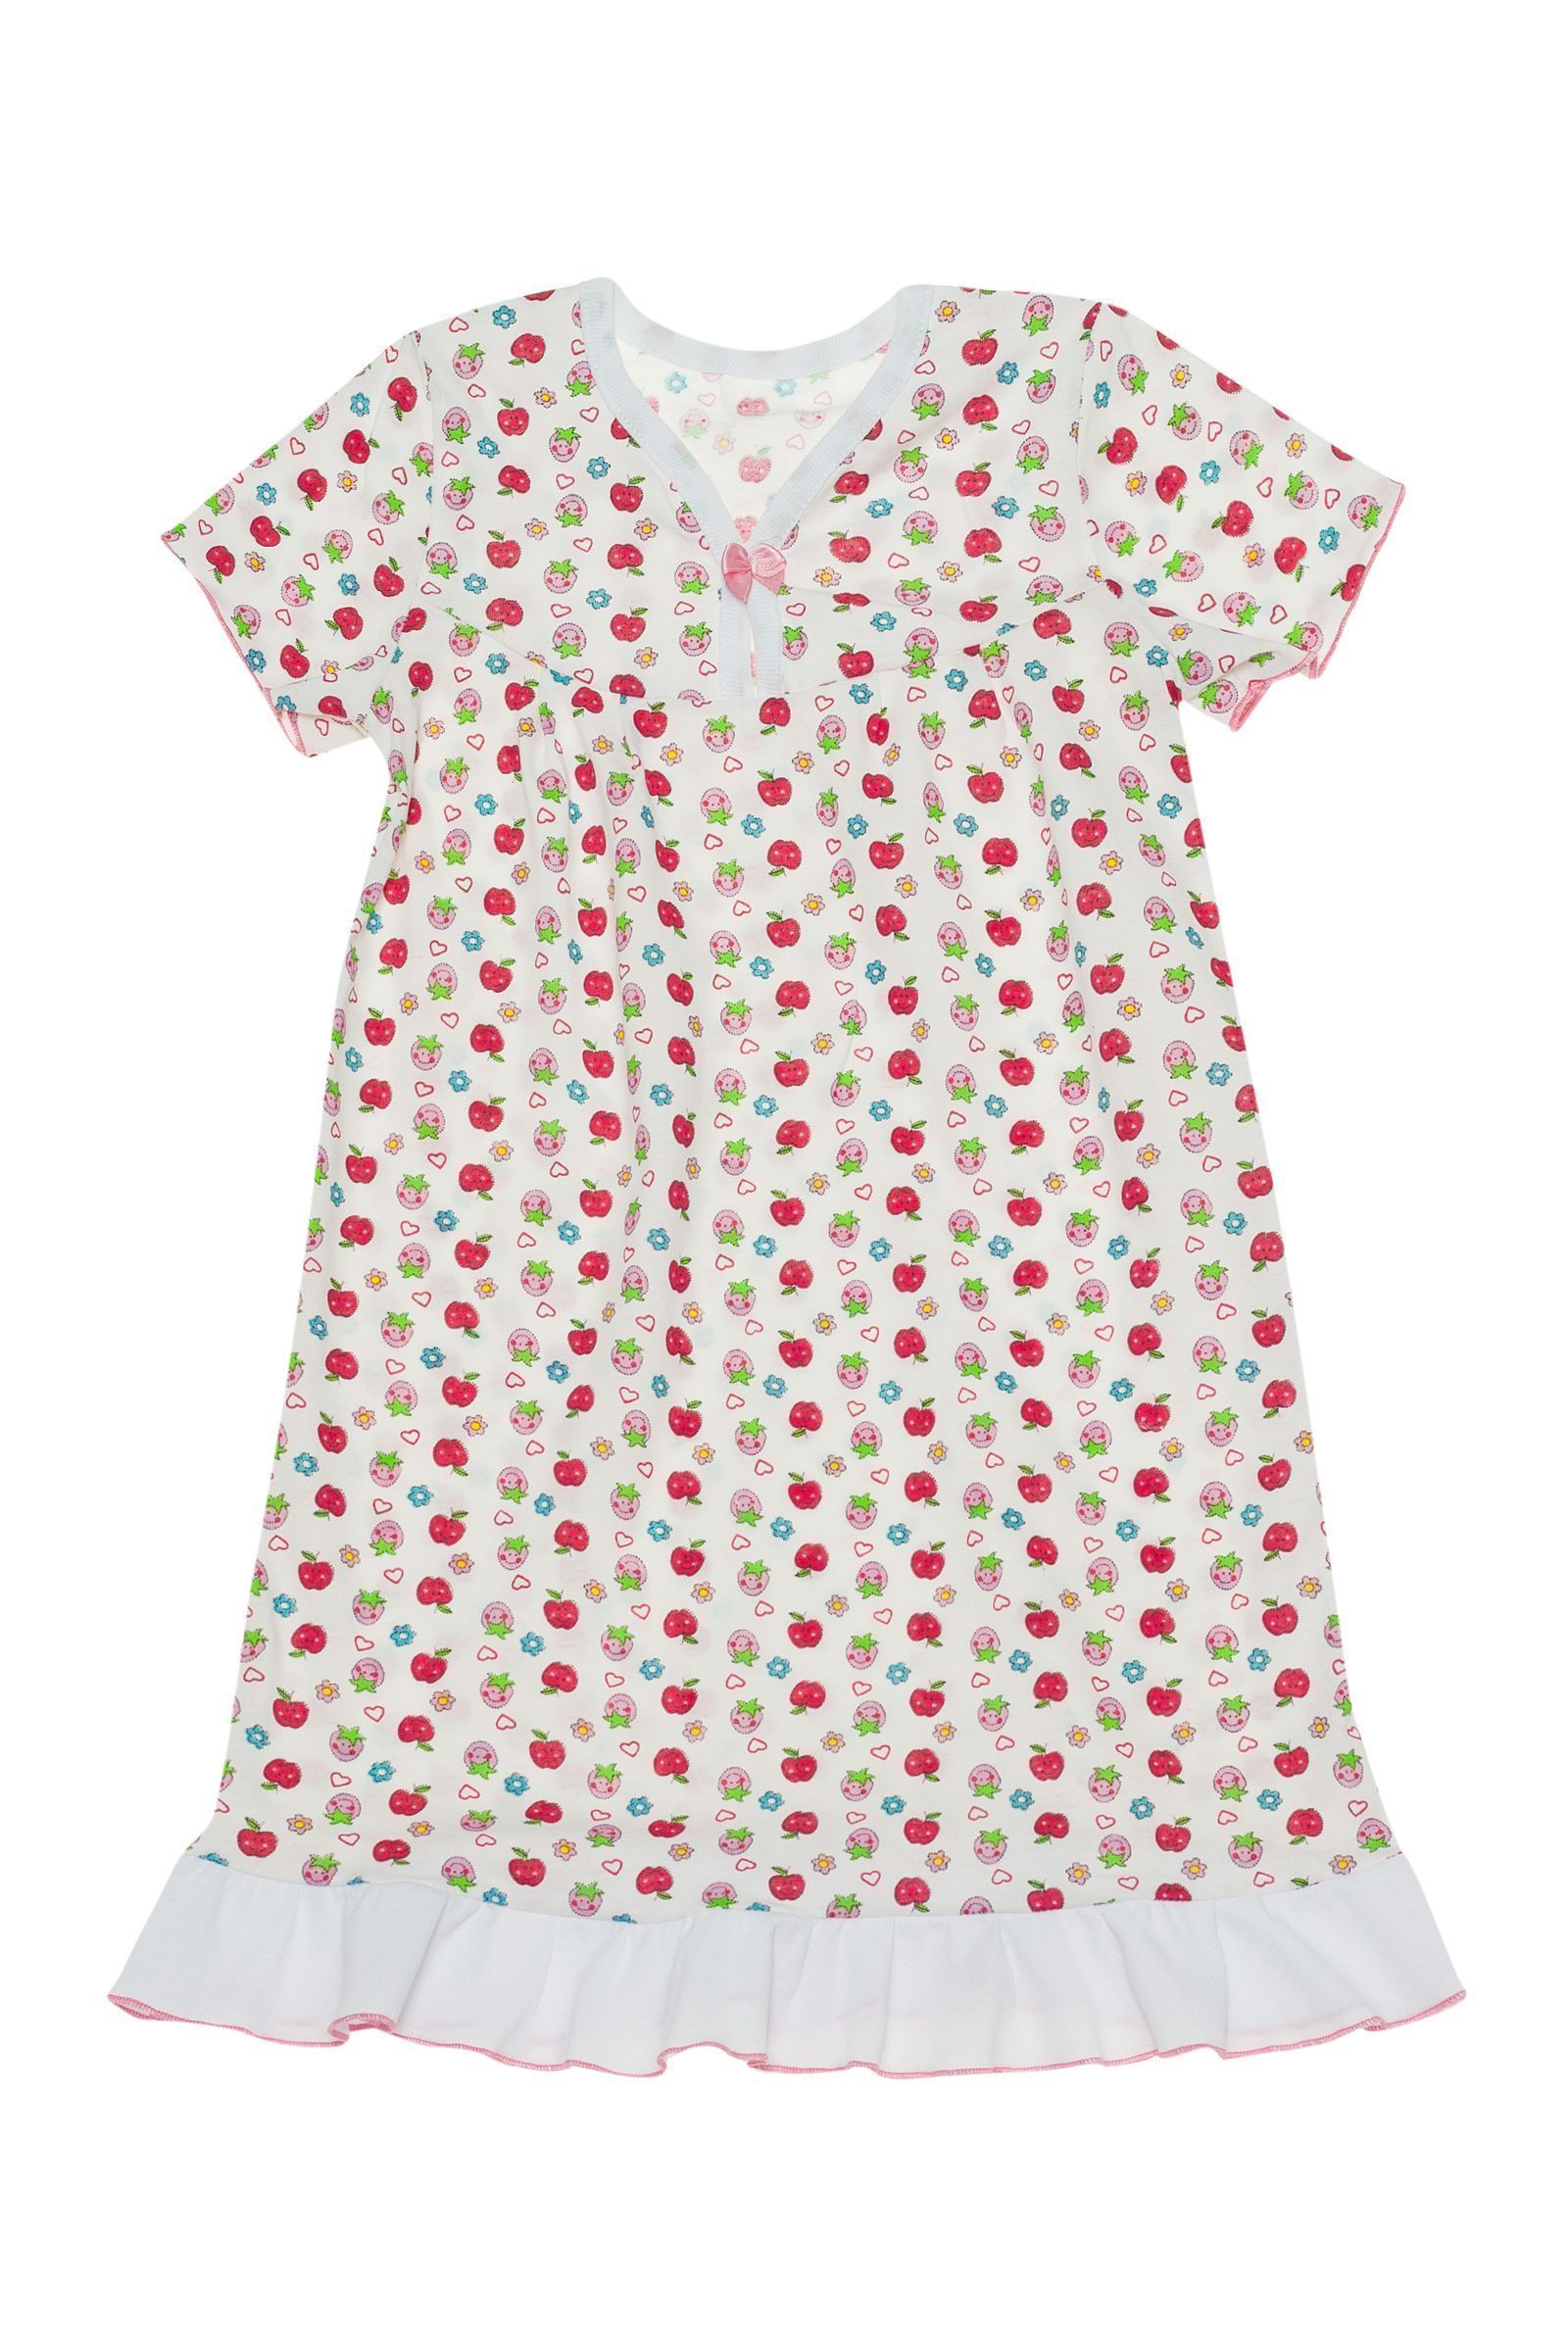 Ночная сорочка-СР02-2436 оптом от производителя детской одежды 'Алёна'